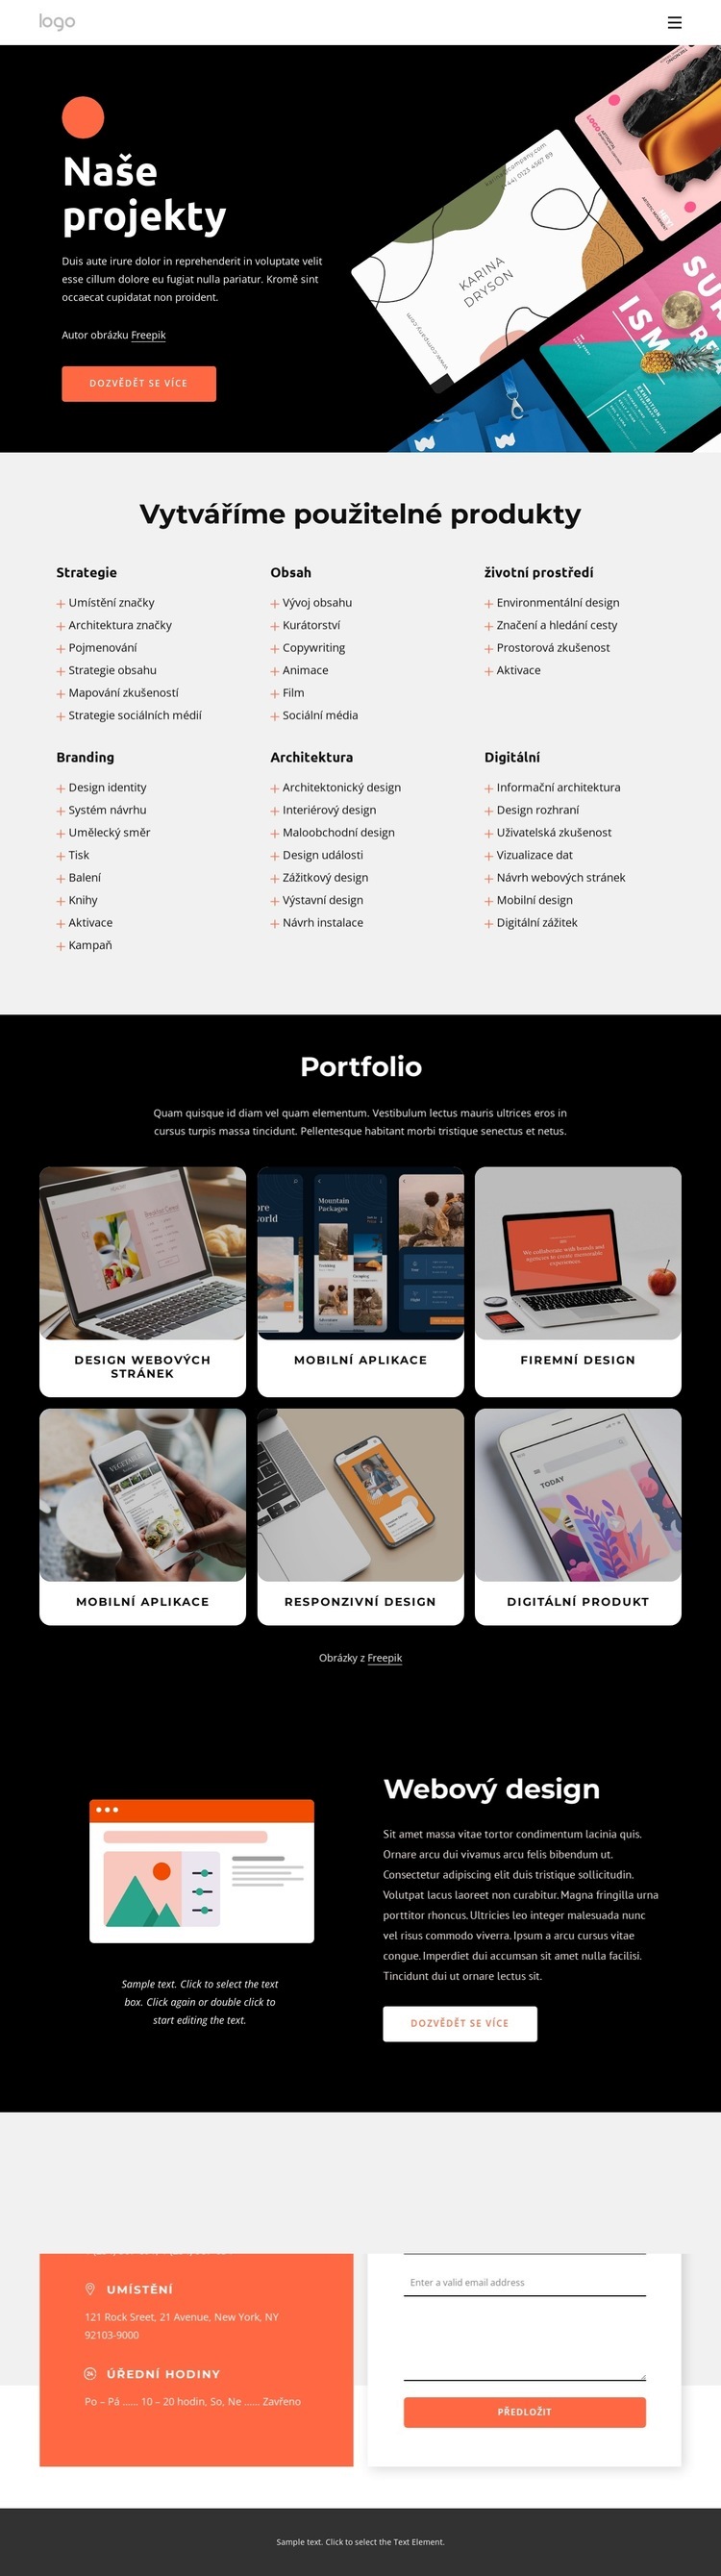 Naše kreativní portfolio Webový design